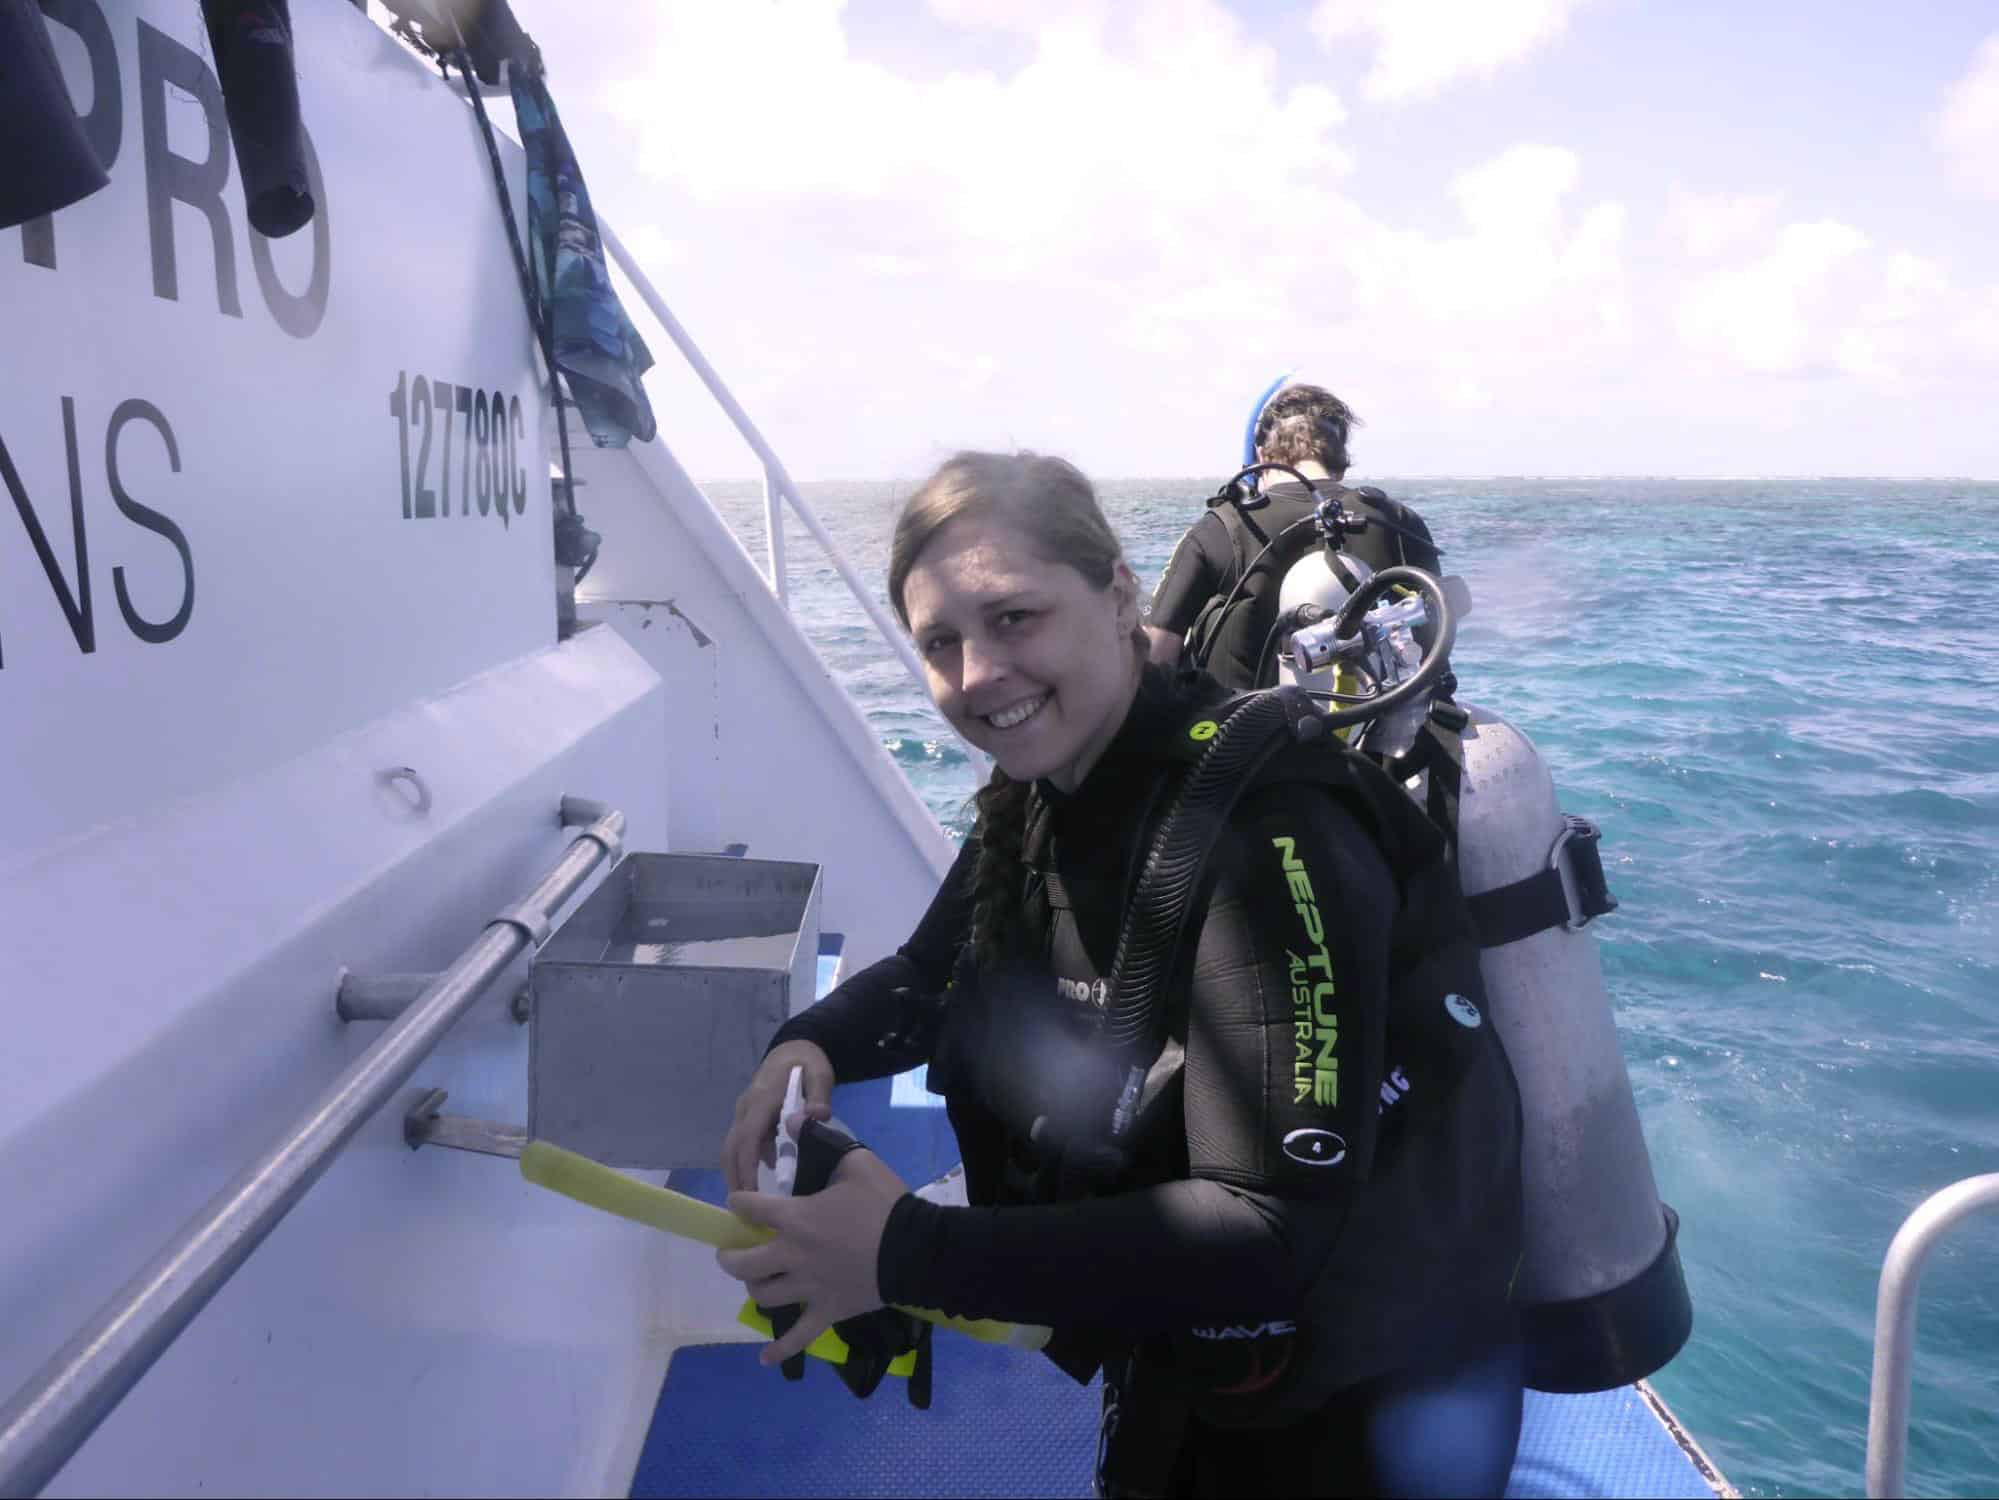 Scuba Diving with Type 1 Diabetes ft. Julie De Vos